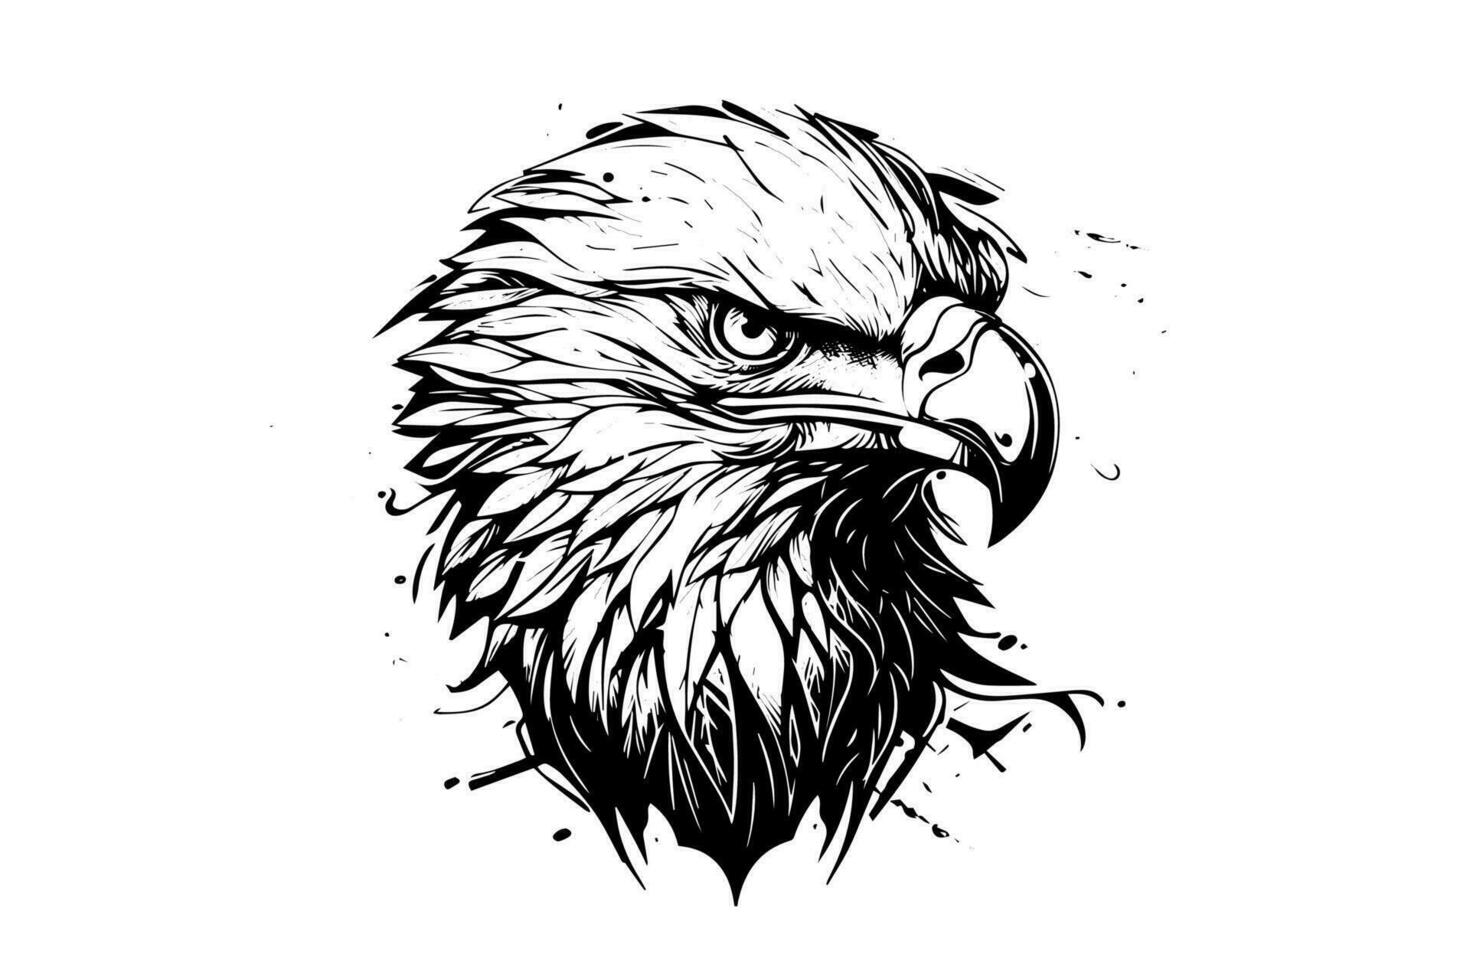 Adler Kopf Logo Maskottchen im Gravur Stil. Vektor Illustration von Zeichen oder markieren.